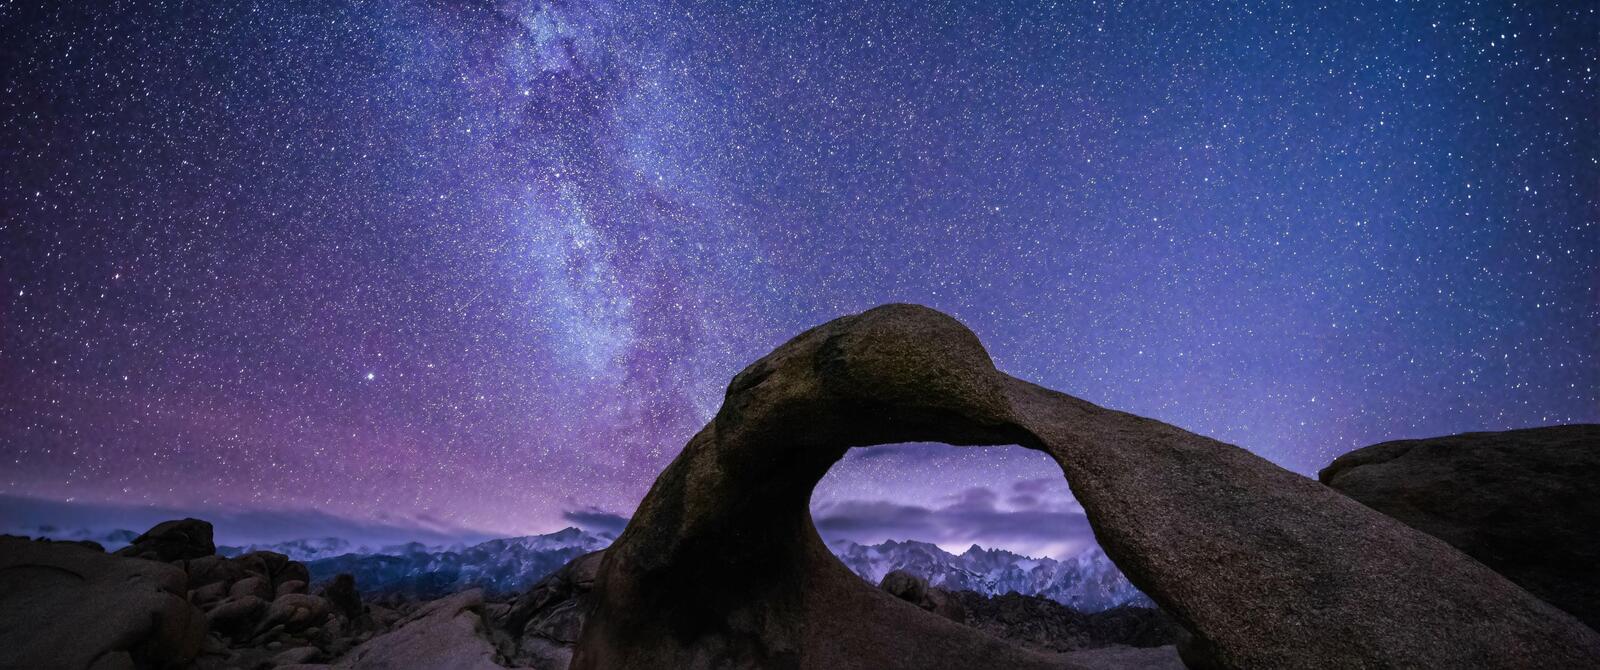 Бесплатное фото Ночное небо в горах